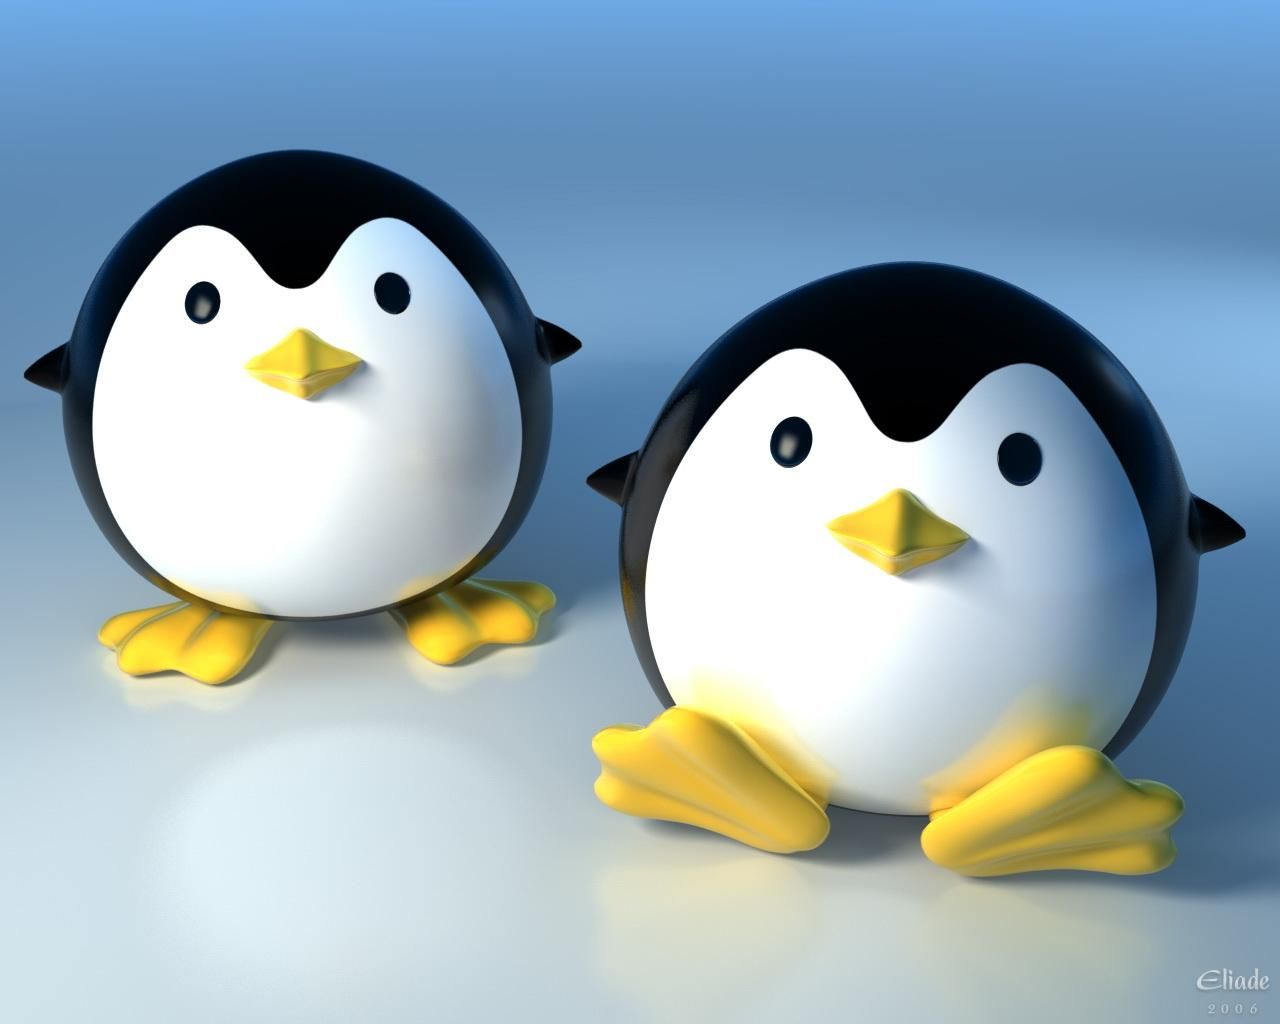 Hình nền penguin 3D là một lựa chọn hoàn hảo cho những ai yêu thích loài chim cánh cụt dễ thương này. Những hình ảnh 3D chân thật như đang sống động và vui tươi, mang tới cho bạn sự thư giãn và niềm vui không thể tả. Hãy dành thời gian để ngắm nhìn những bức hình nền penguin 3D đẹp lung linh này nhé!